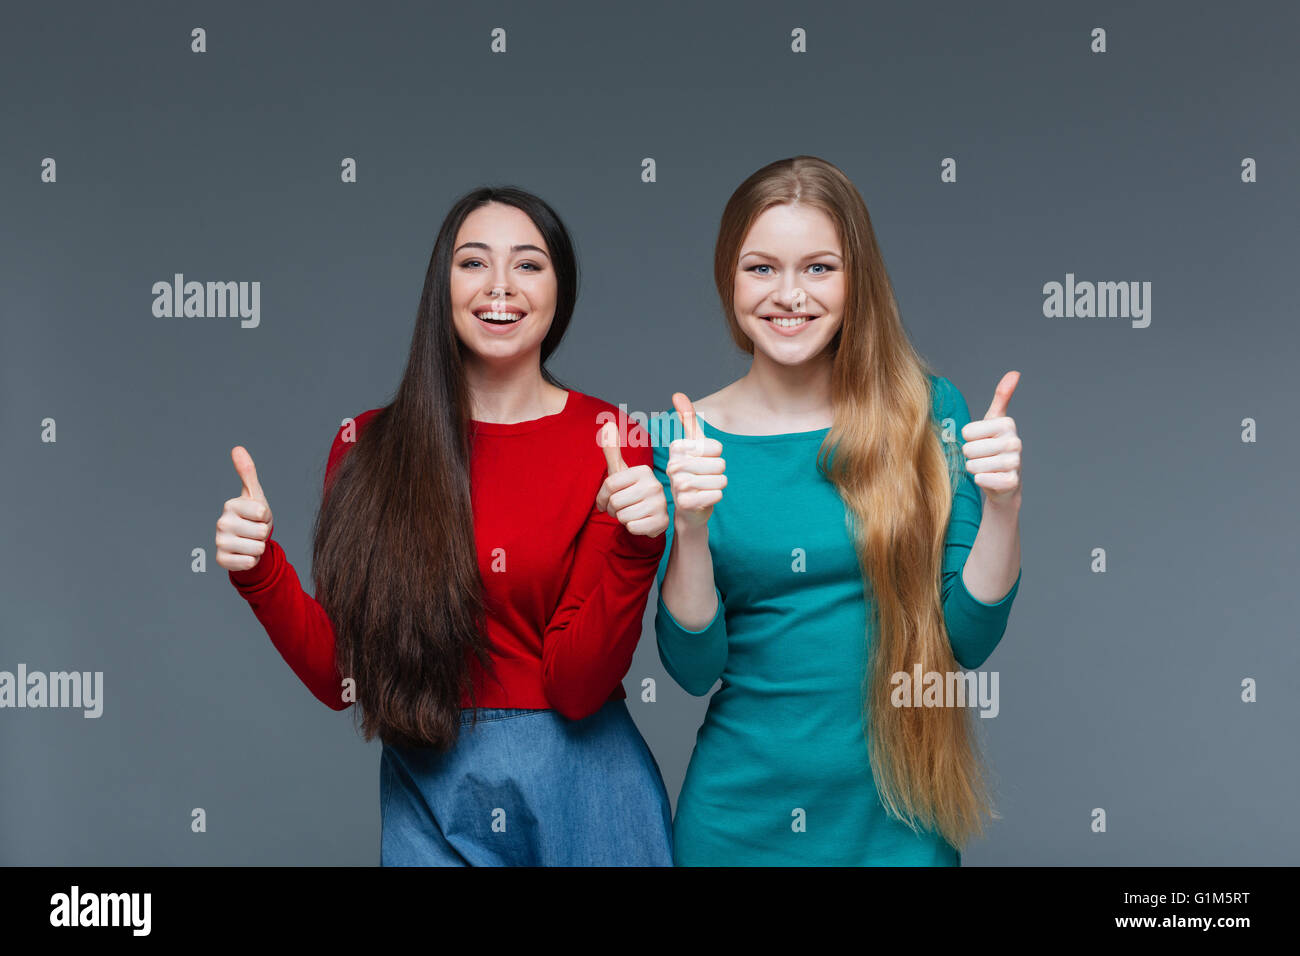 Deux heureux filles showing Thumbs up sur fond gris Banque D'Images